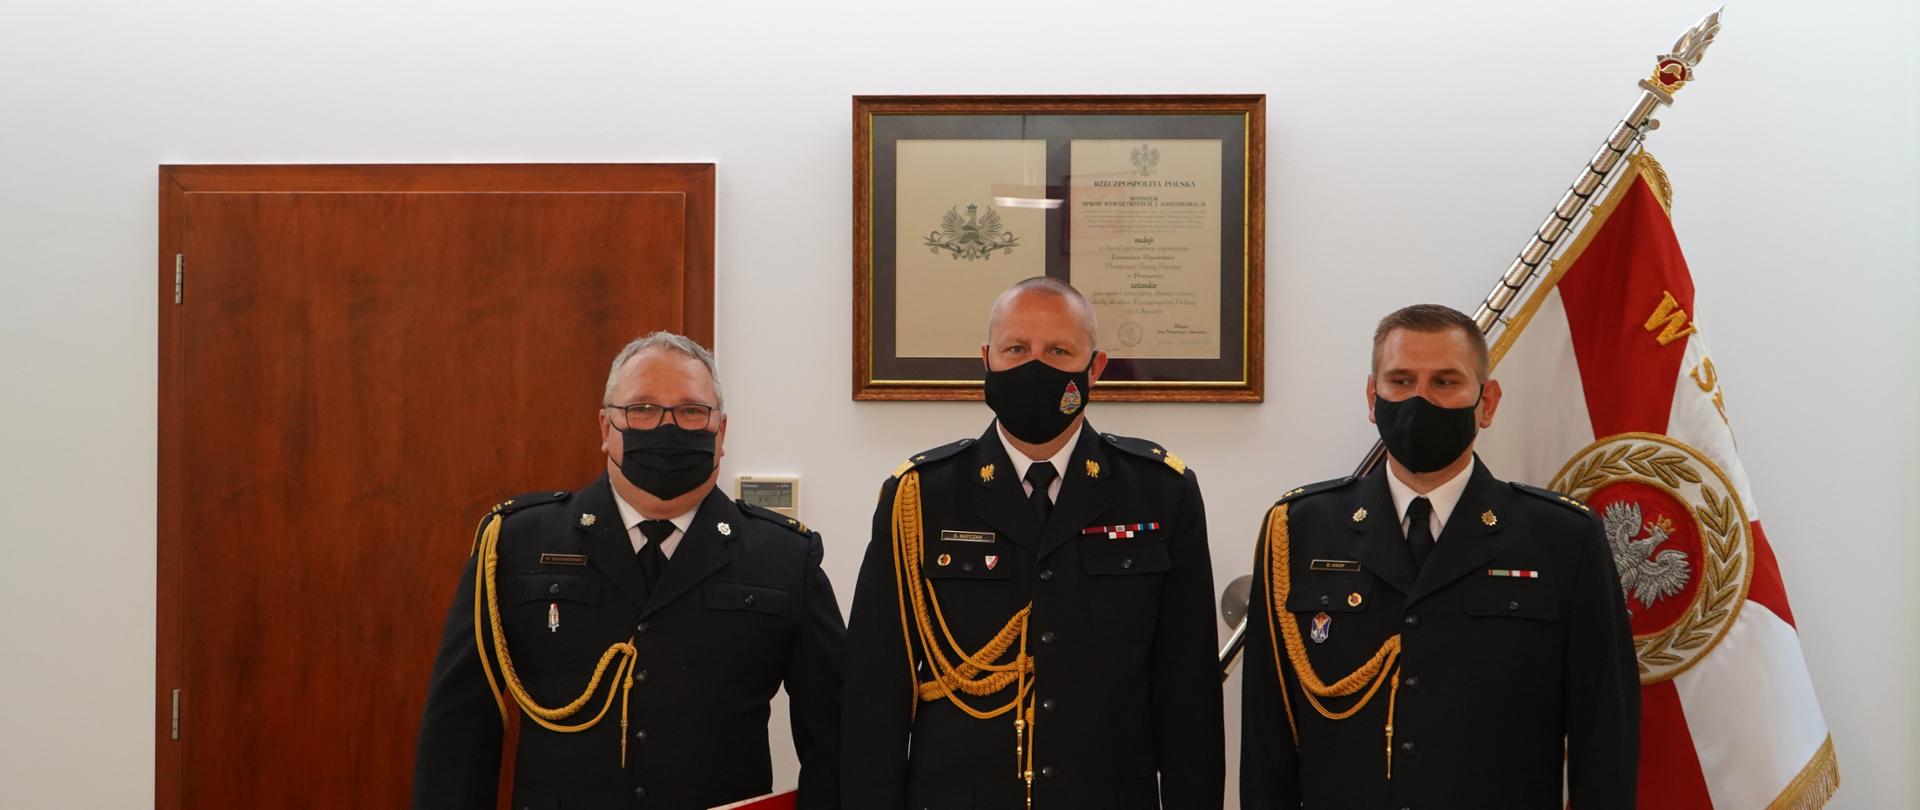 trzech strażaków w ciemnych mundurach stoi na tle sztandaru